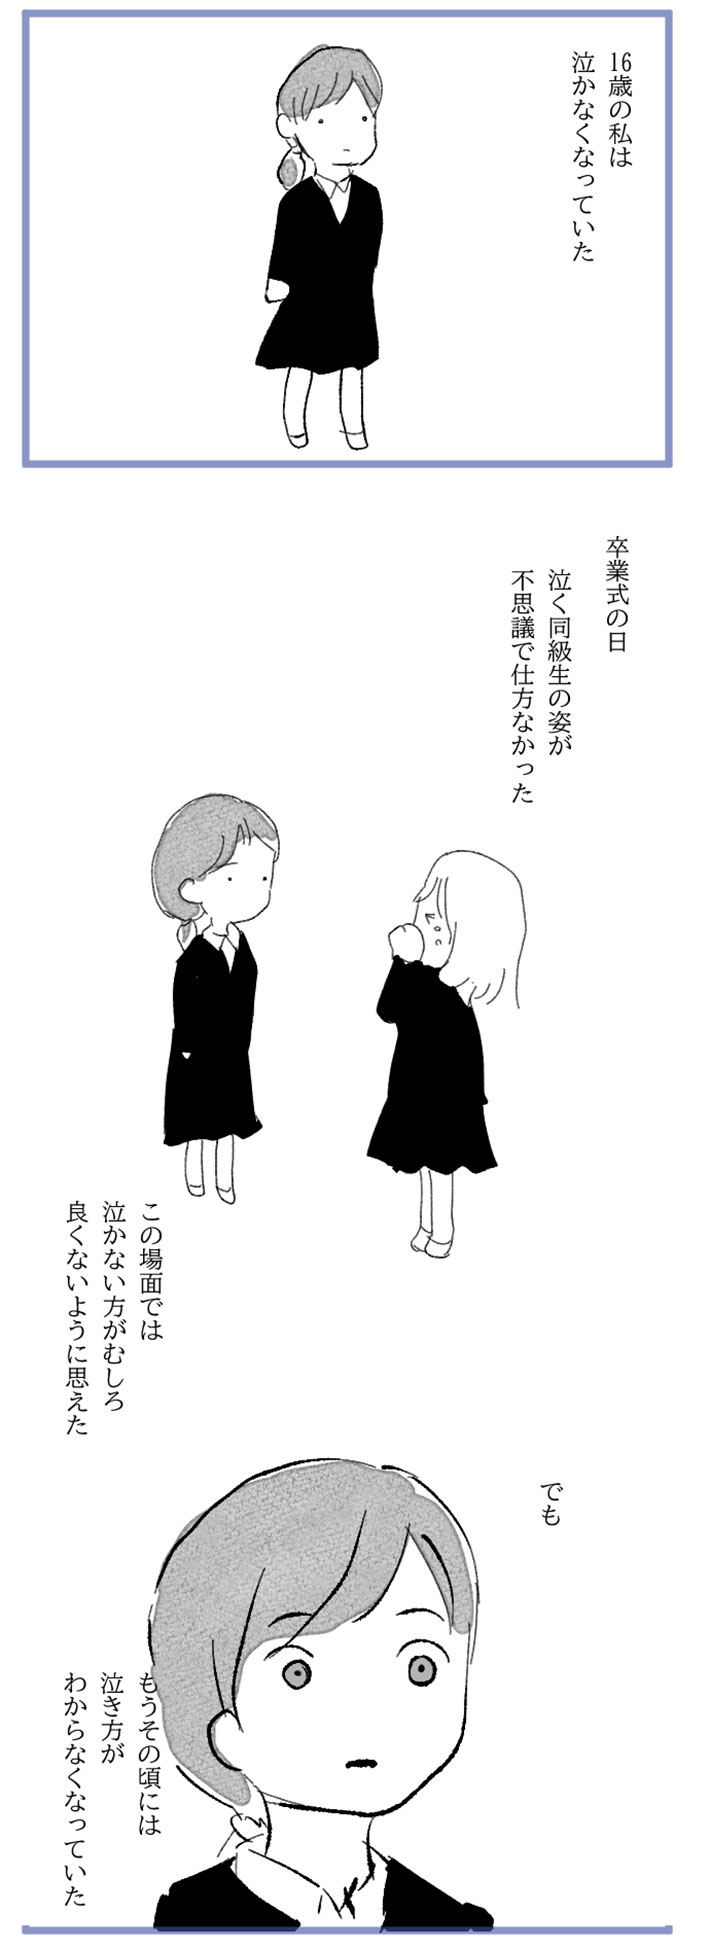 水谷アスさんの漫画作品2